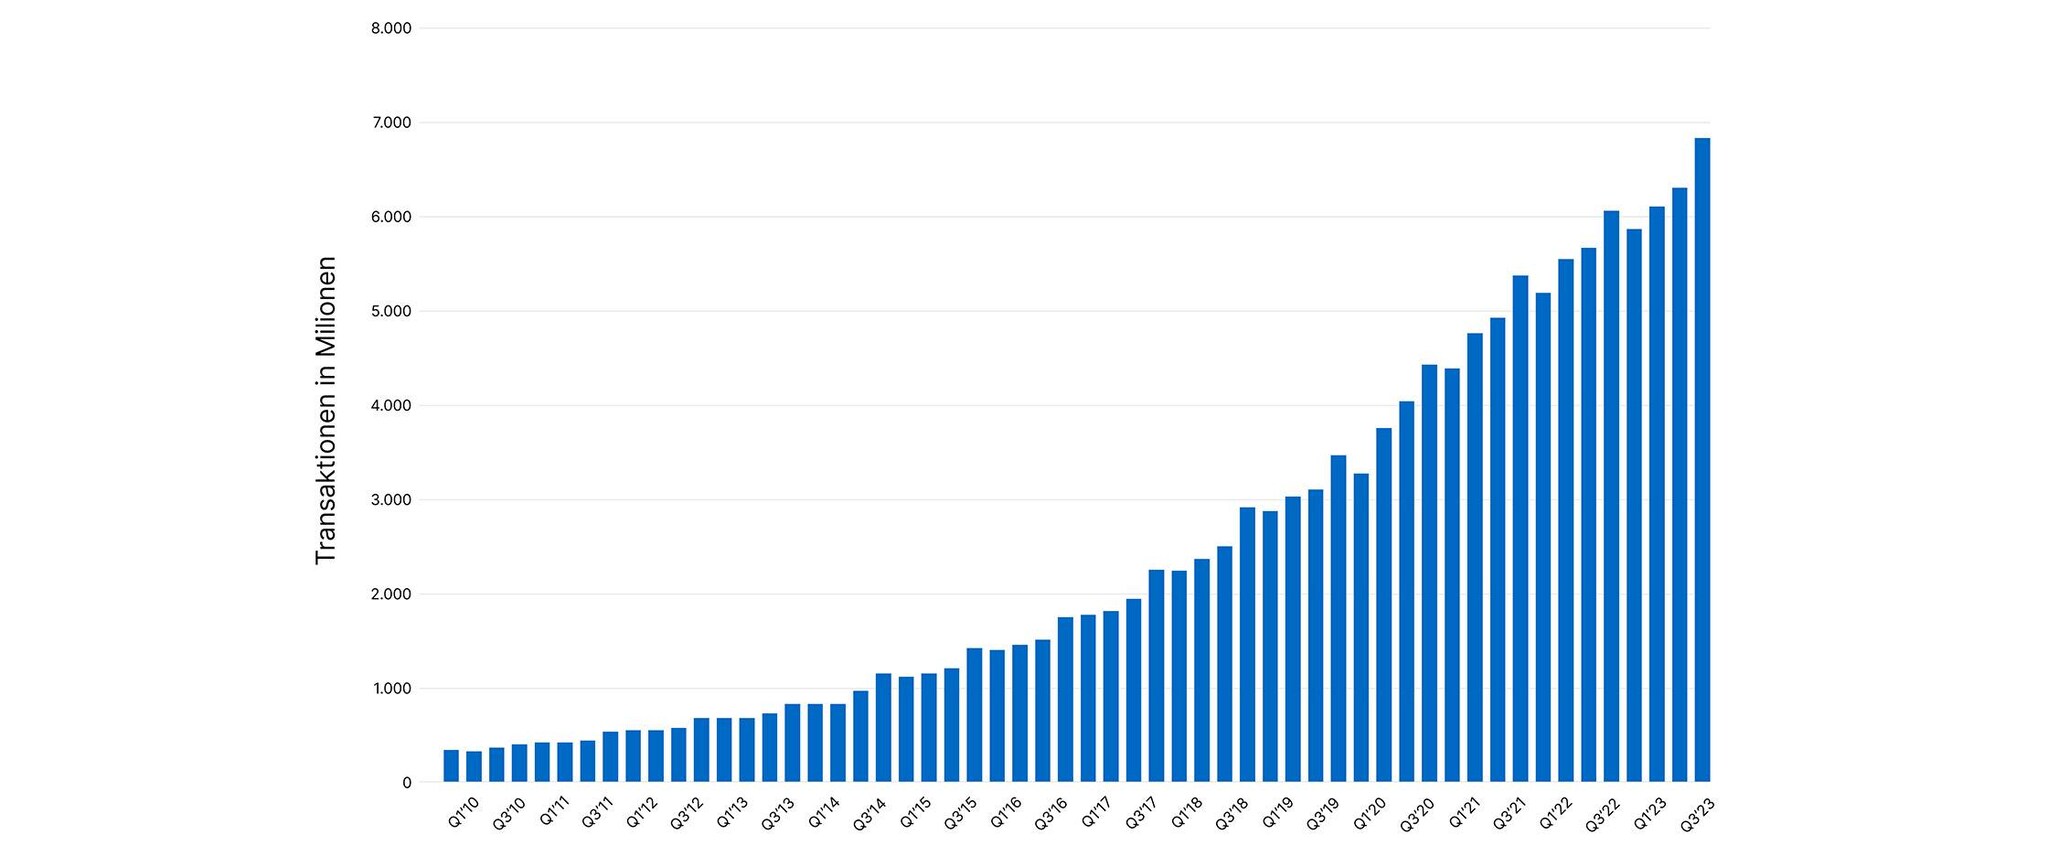 10077 Die Entwicklung der Anzahl der Transaktionen seit 2010_936x2240